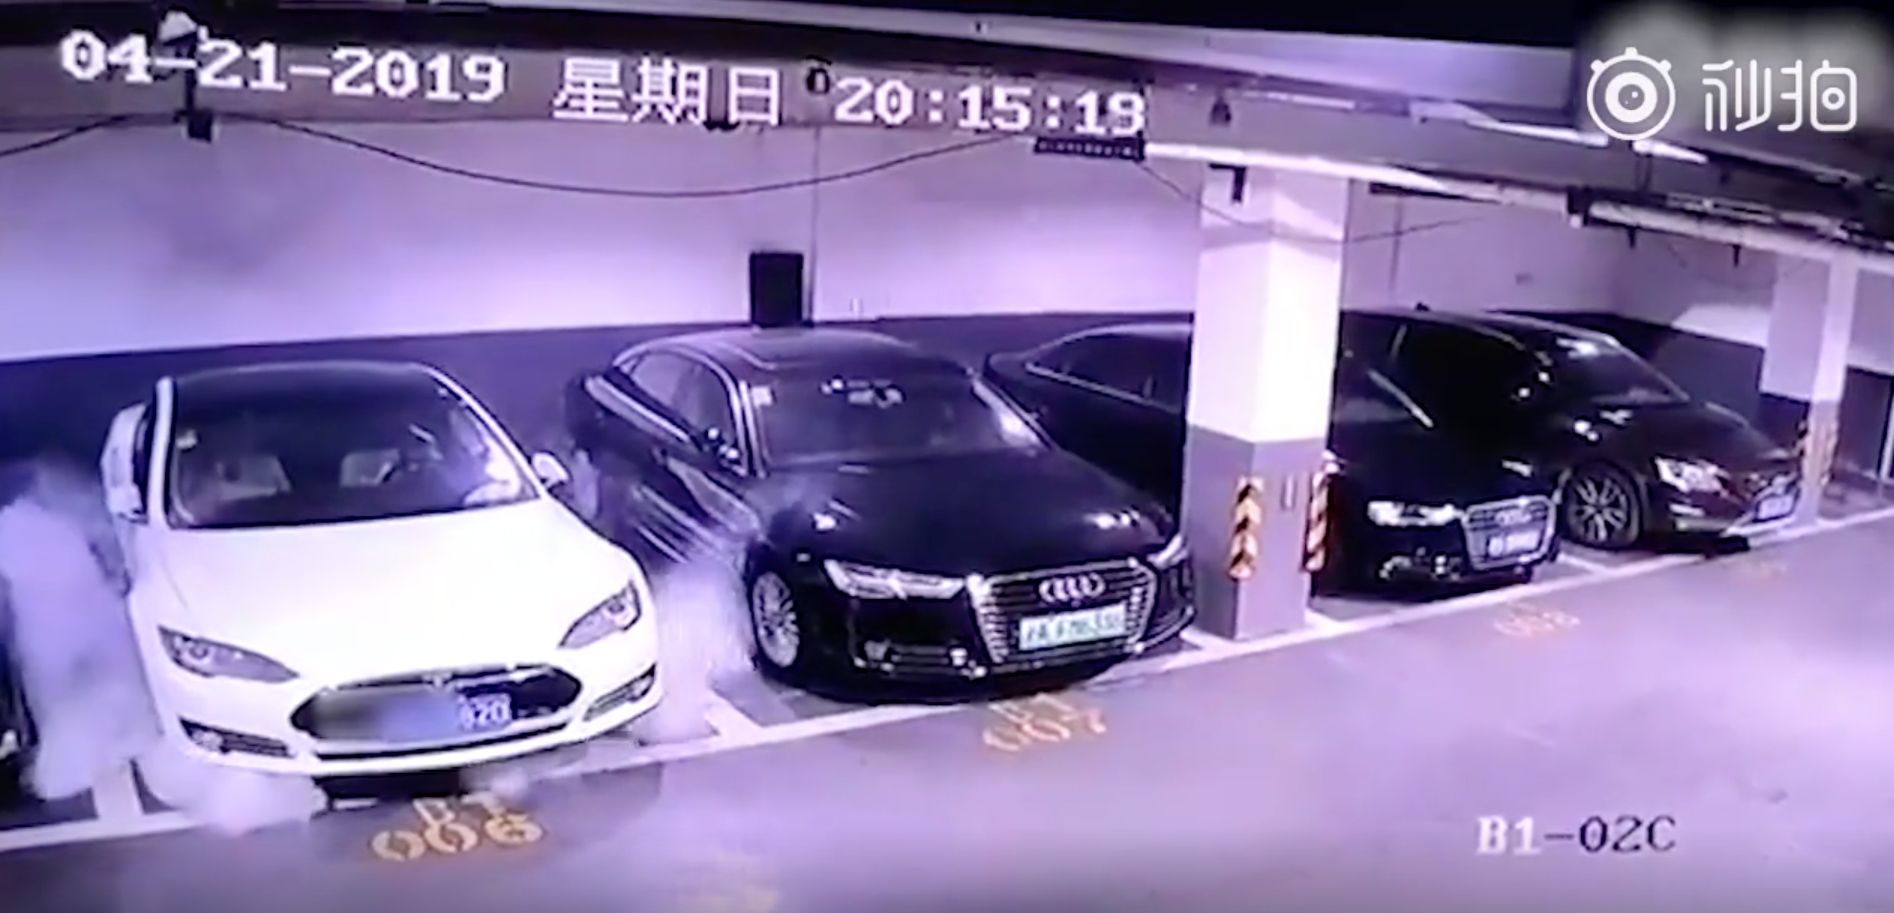 Expoloze zaparkovaného vozu Tesla Model S. Videozáznam sdílený na čínské sociální síti